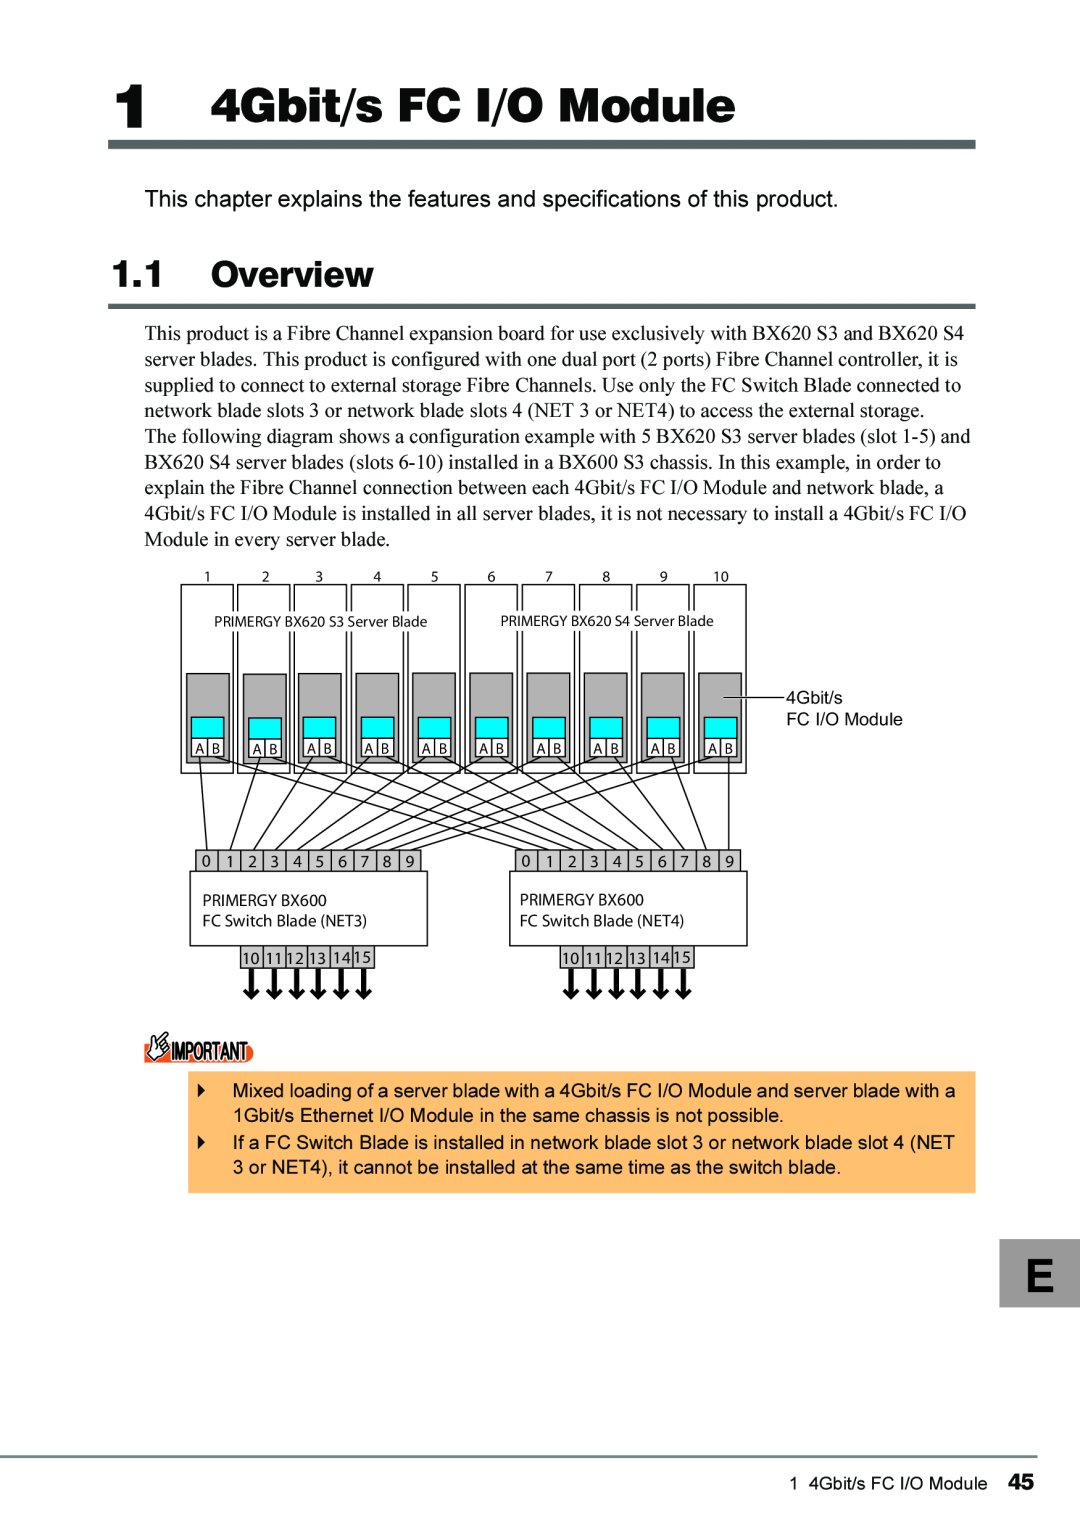 Fujitsu 4Gbit/s FC I/O Modules manual 1 4Gbit/s FC I/O Module, Overview 